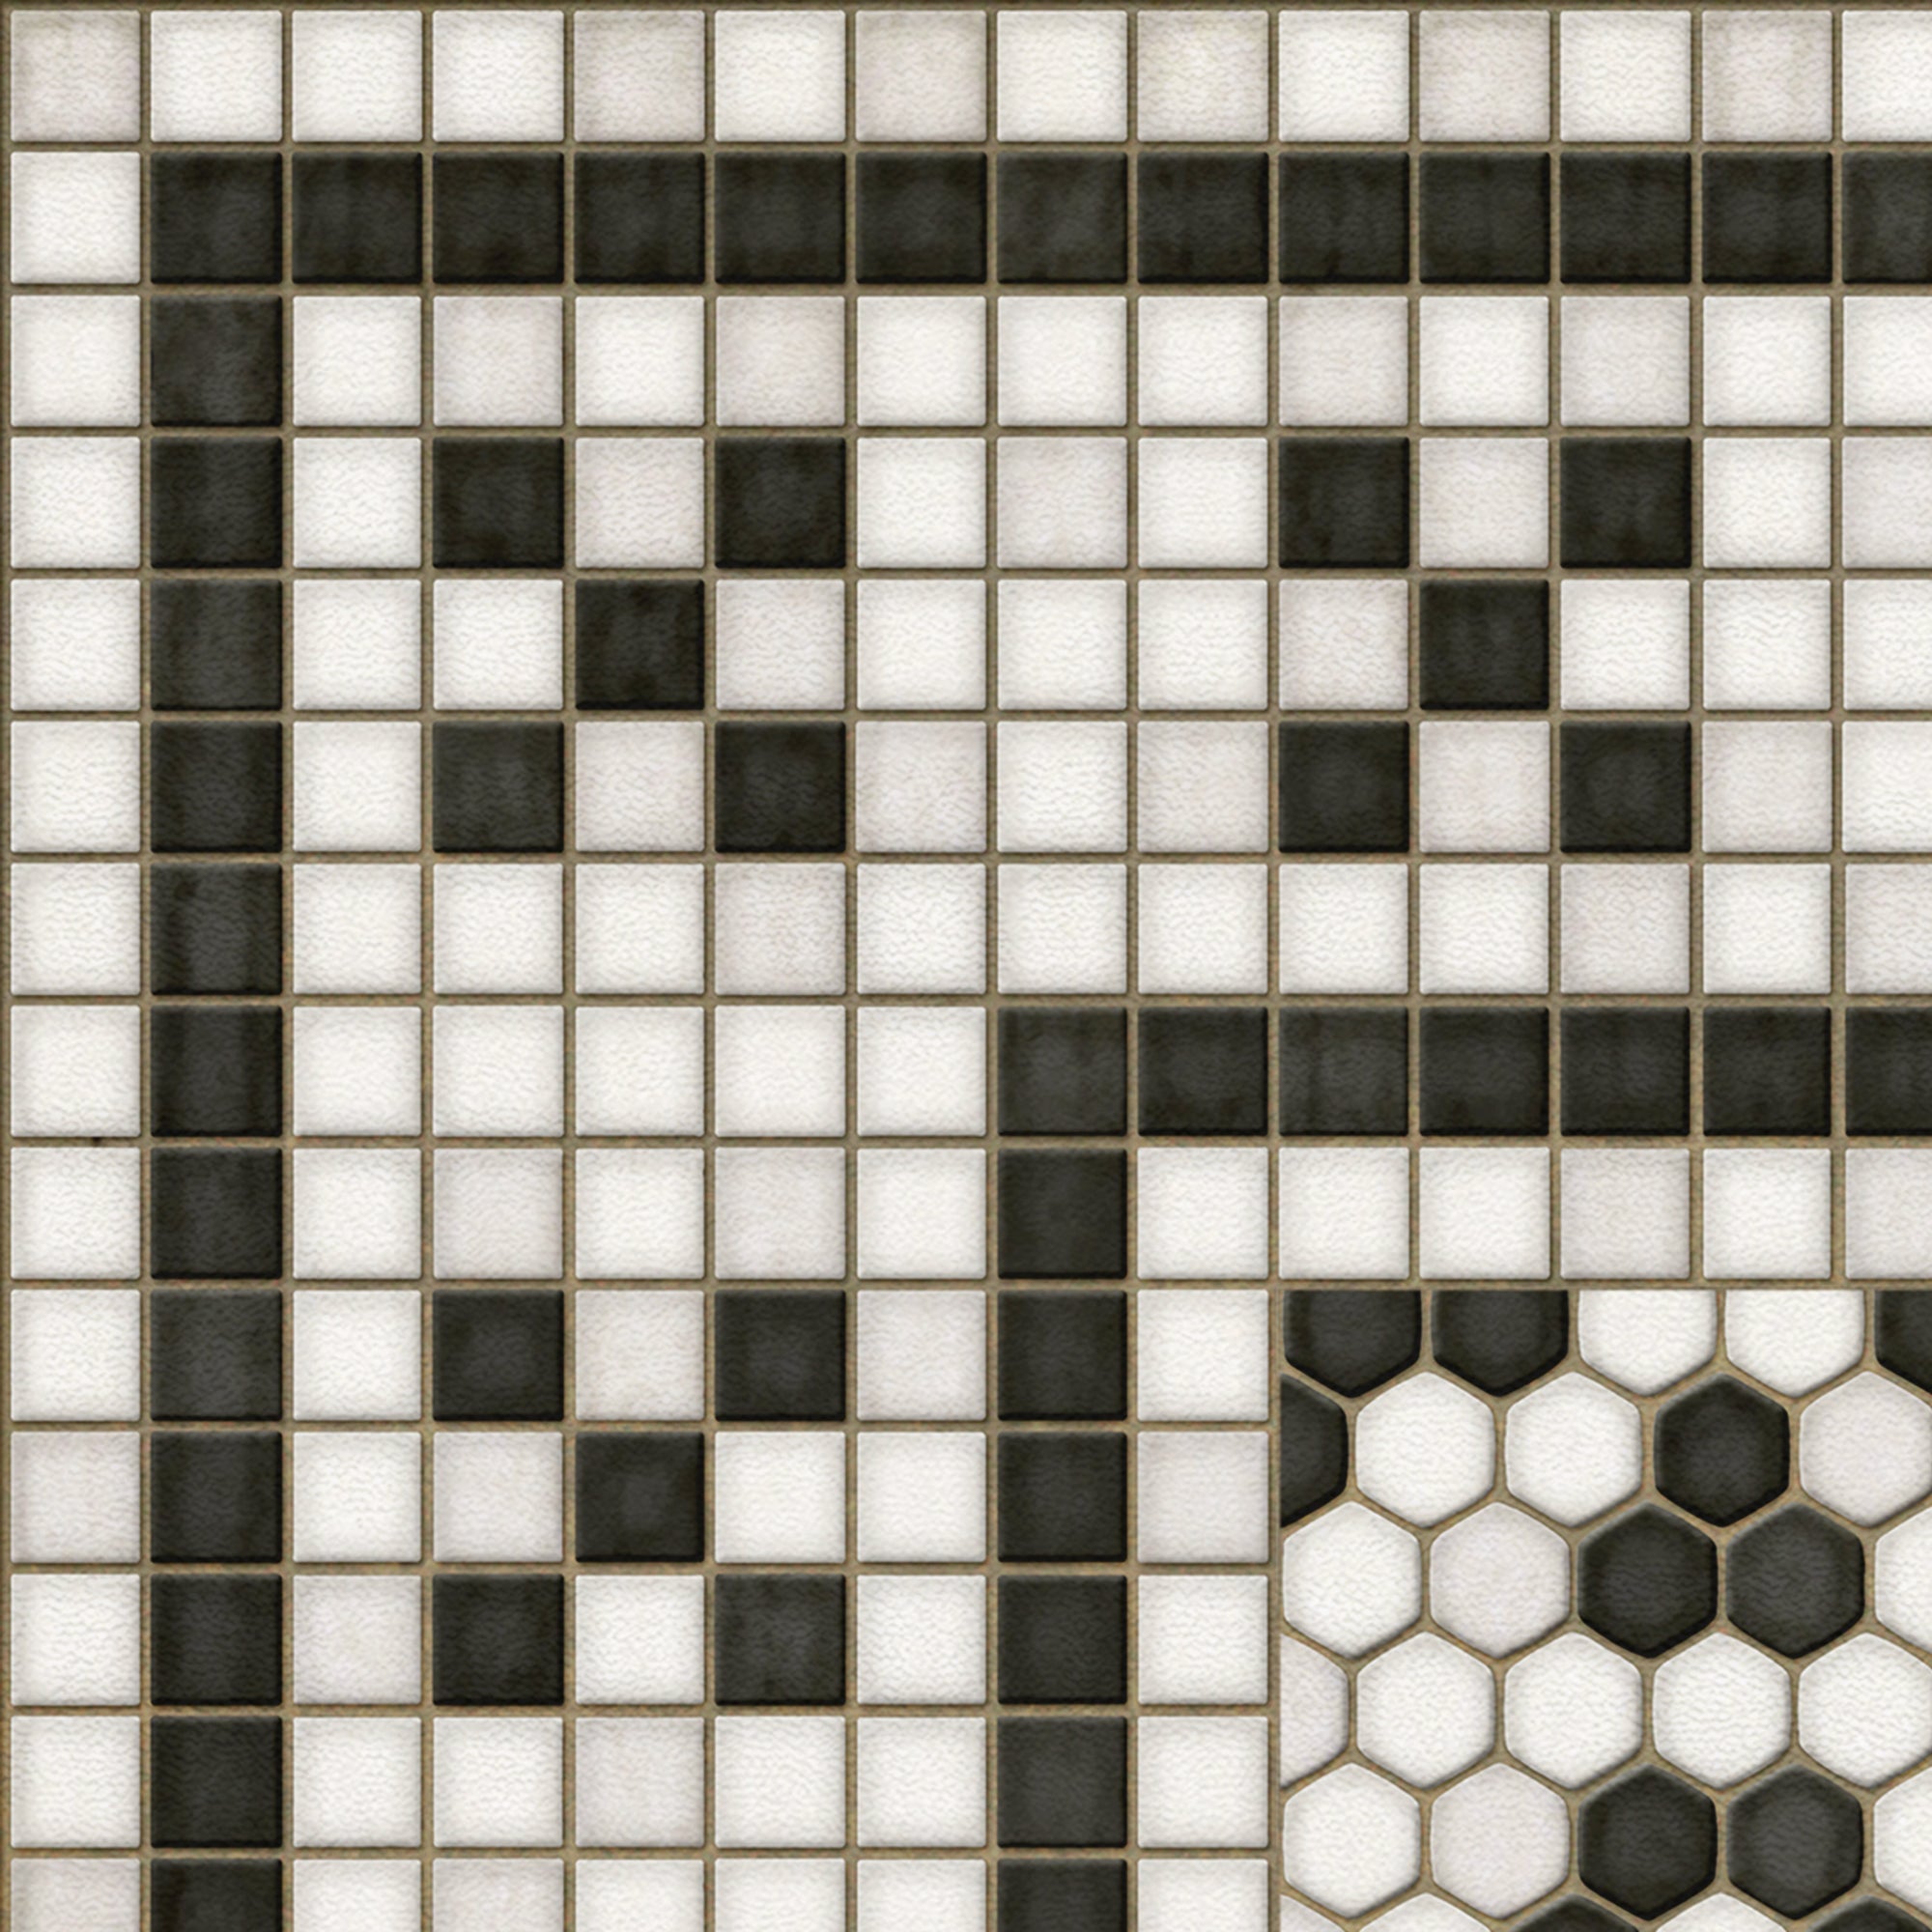 Mosaic F Queensboro Plaza Vinyl Floor Cloth